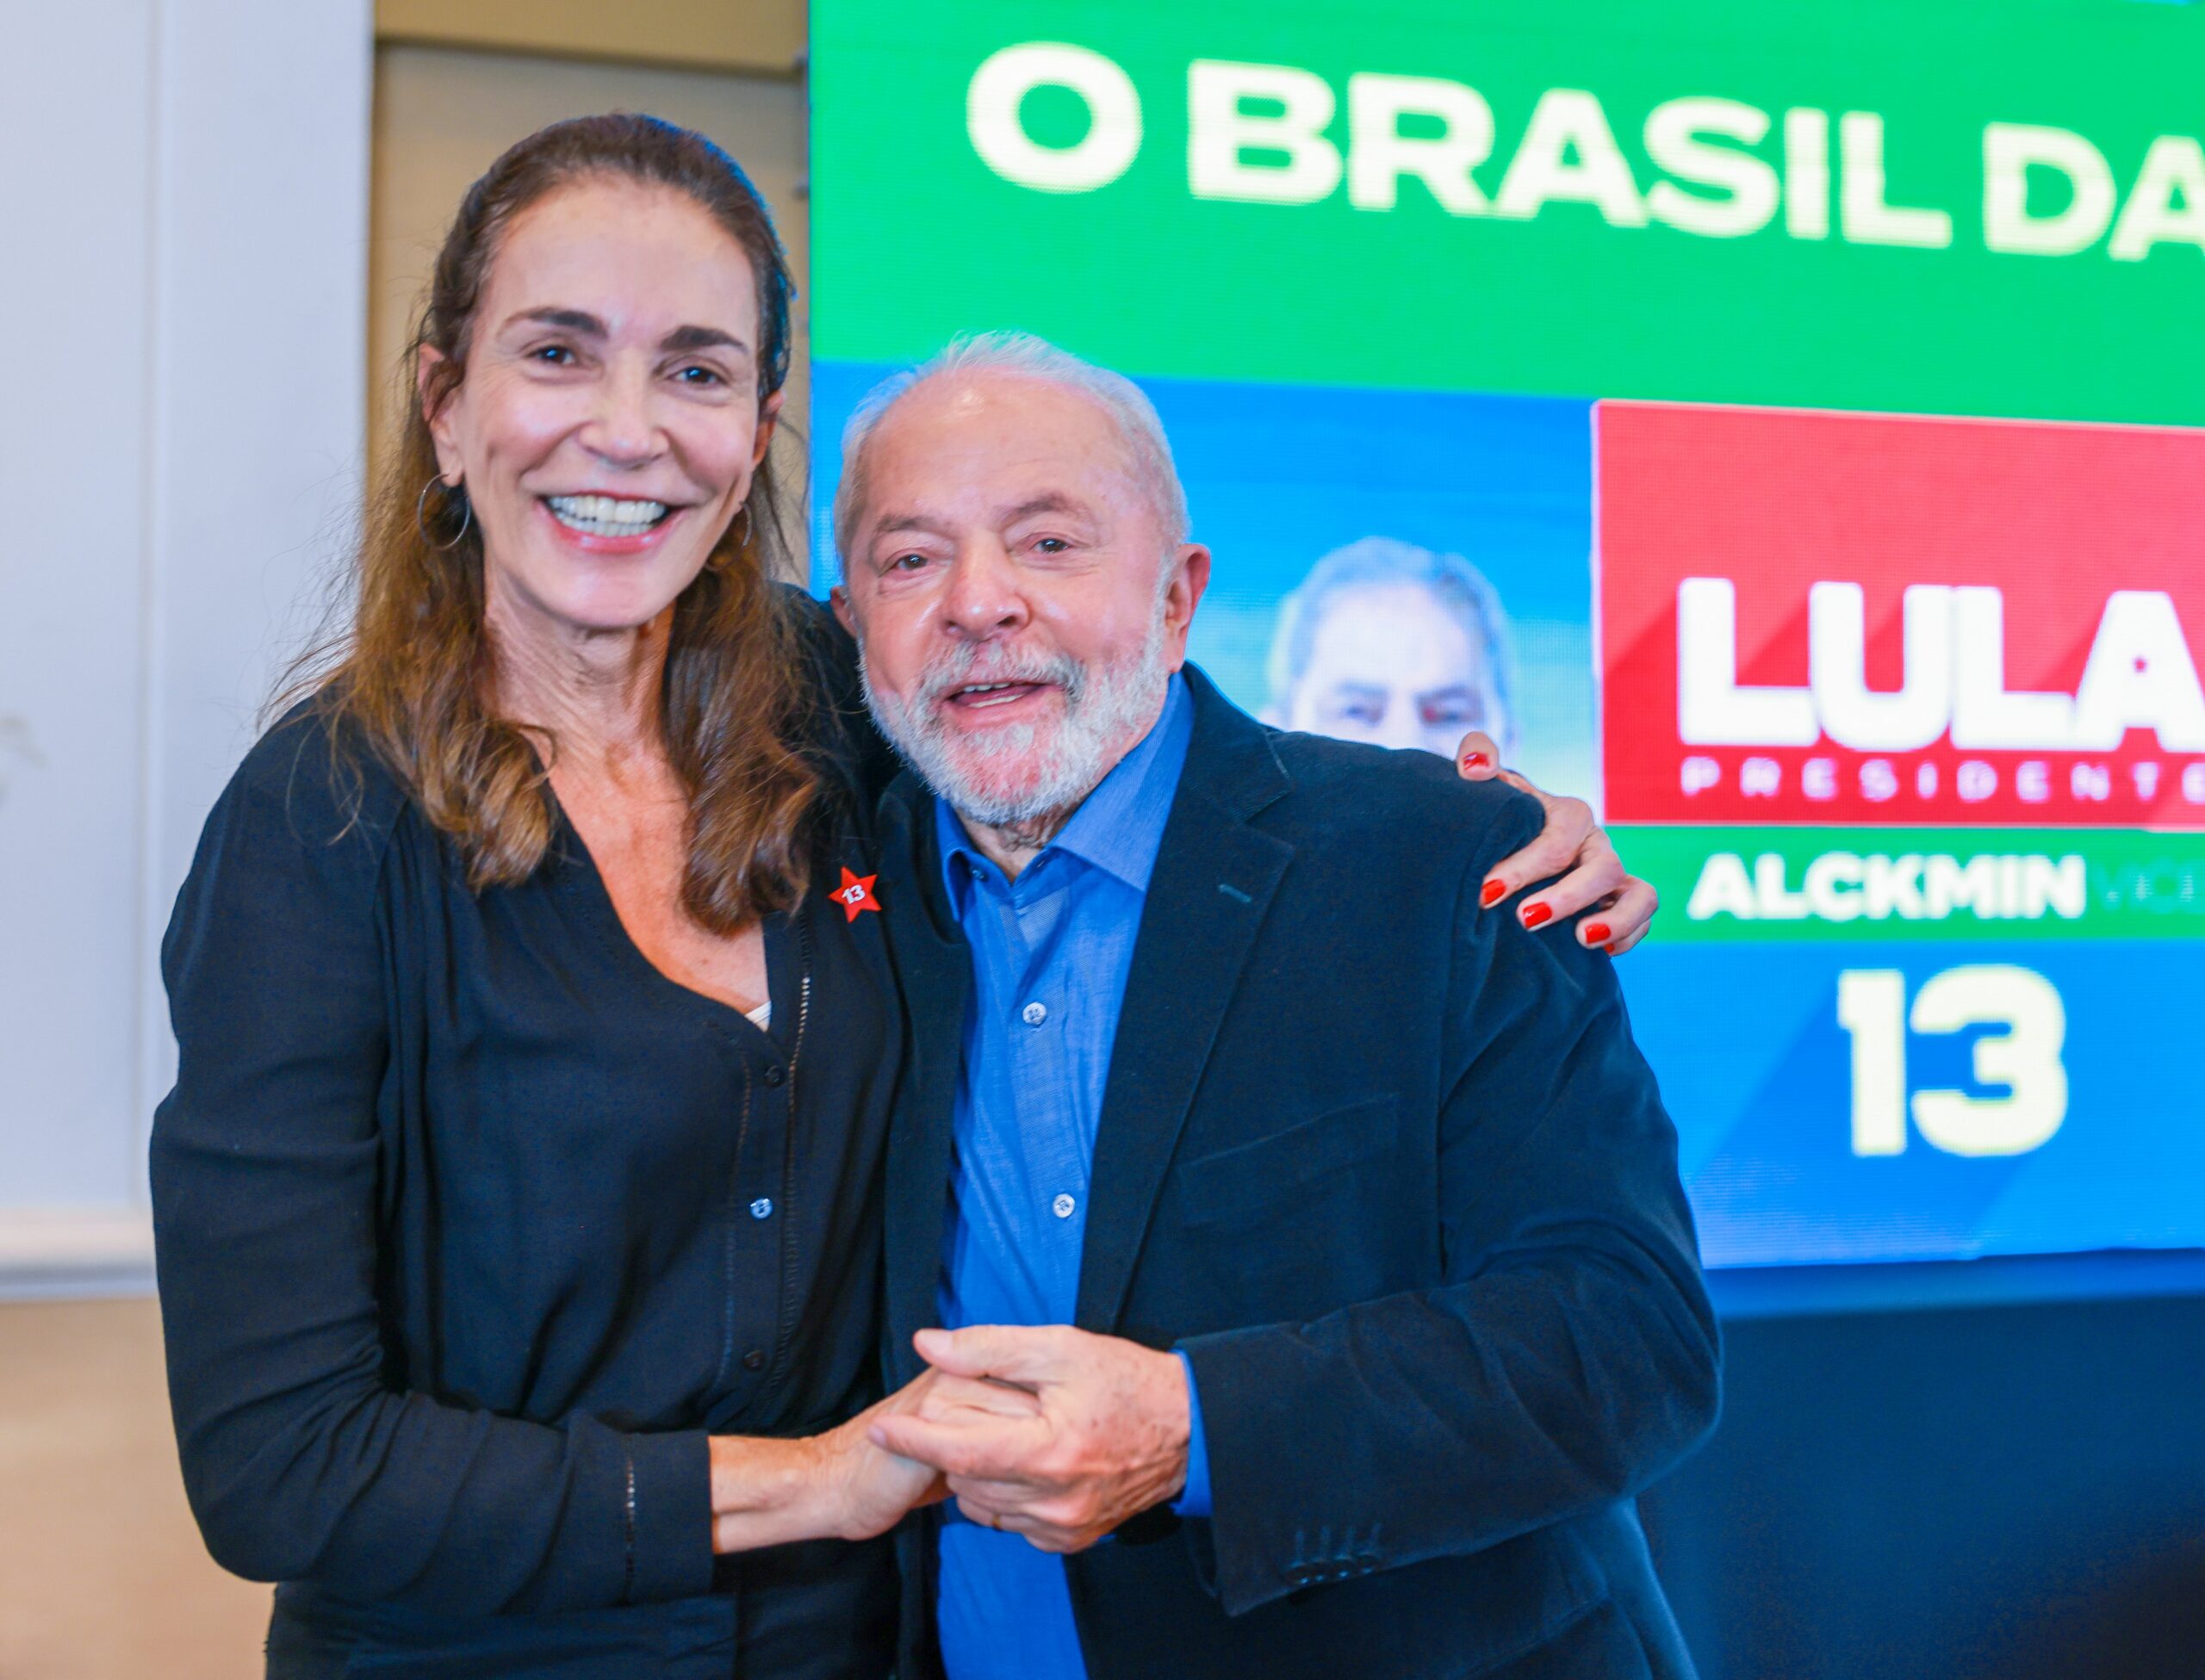 Isabel foi símbolo de luta na defesa de seus ideais e abriu portas, diz Lula